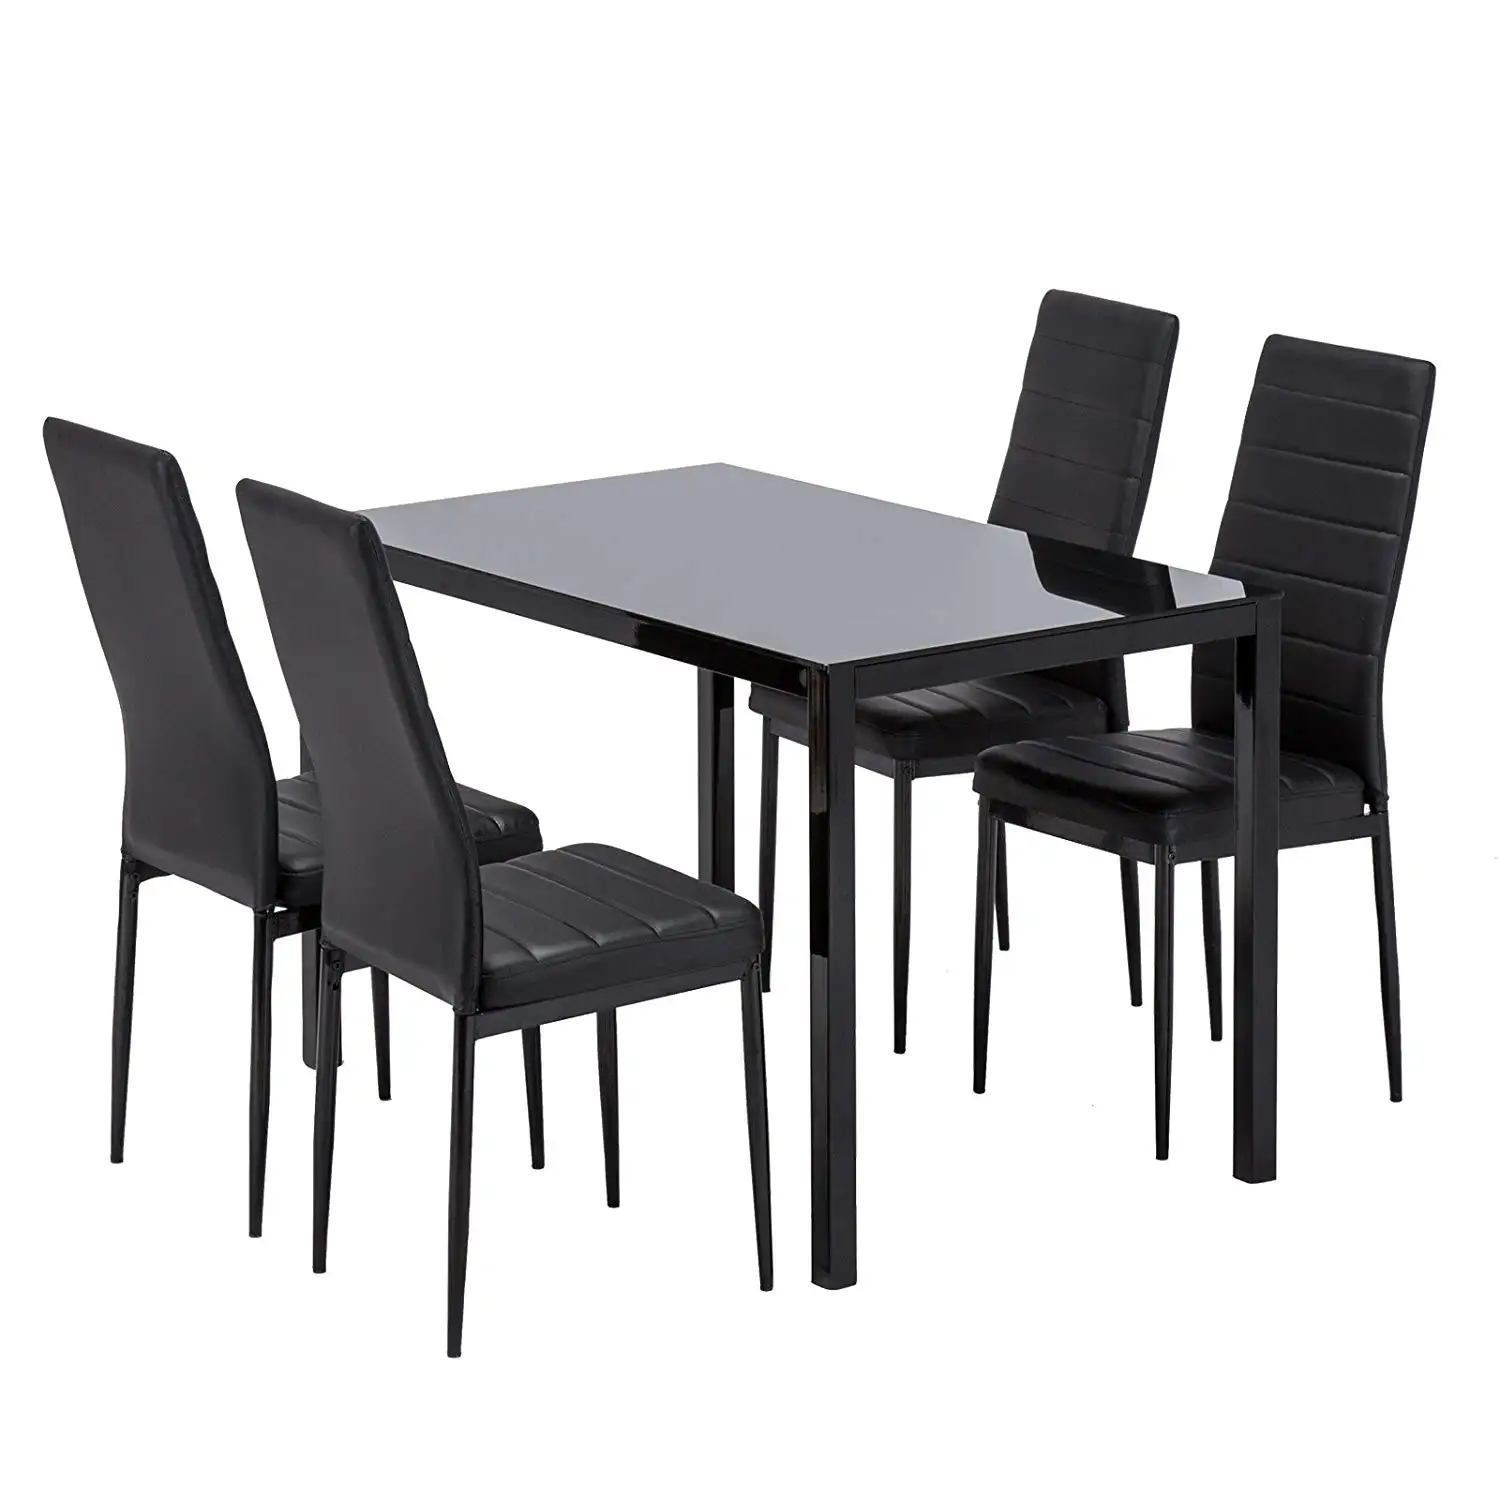 Set Meja Makan Cermin Kaca Tempered, Furnitur Ruang Makan Modern Kursi PVC Putih atau Hitam dengan Kaki Logam Pernis